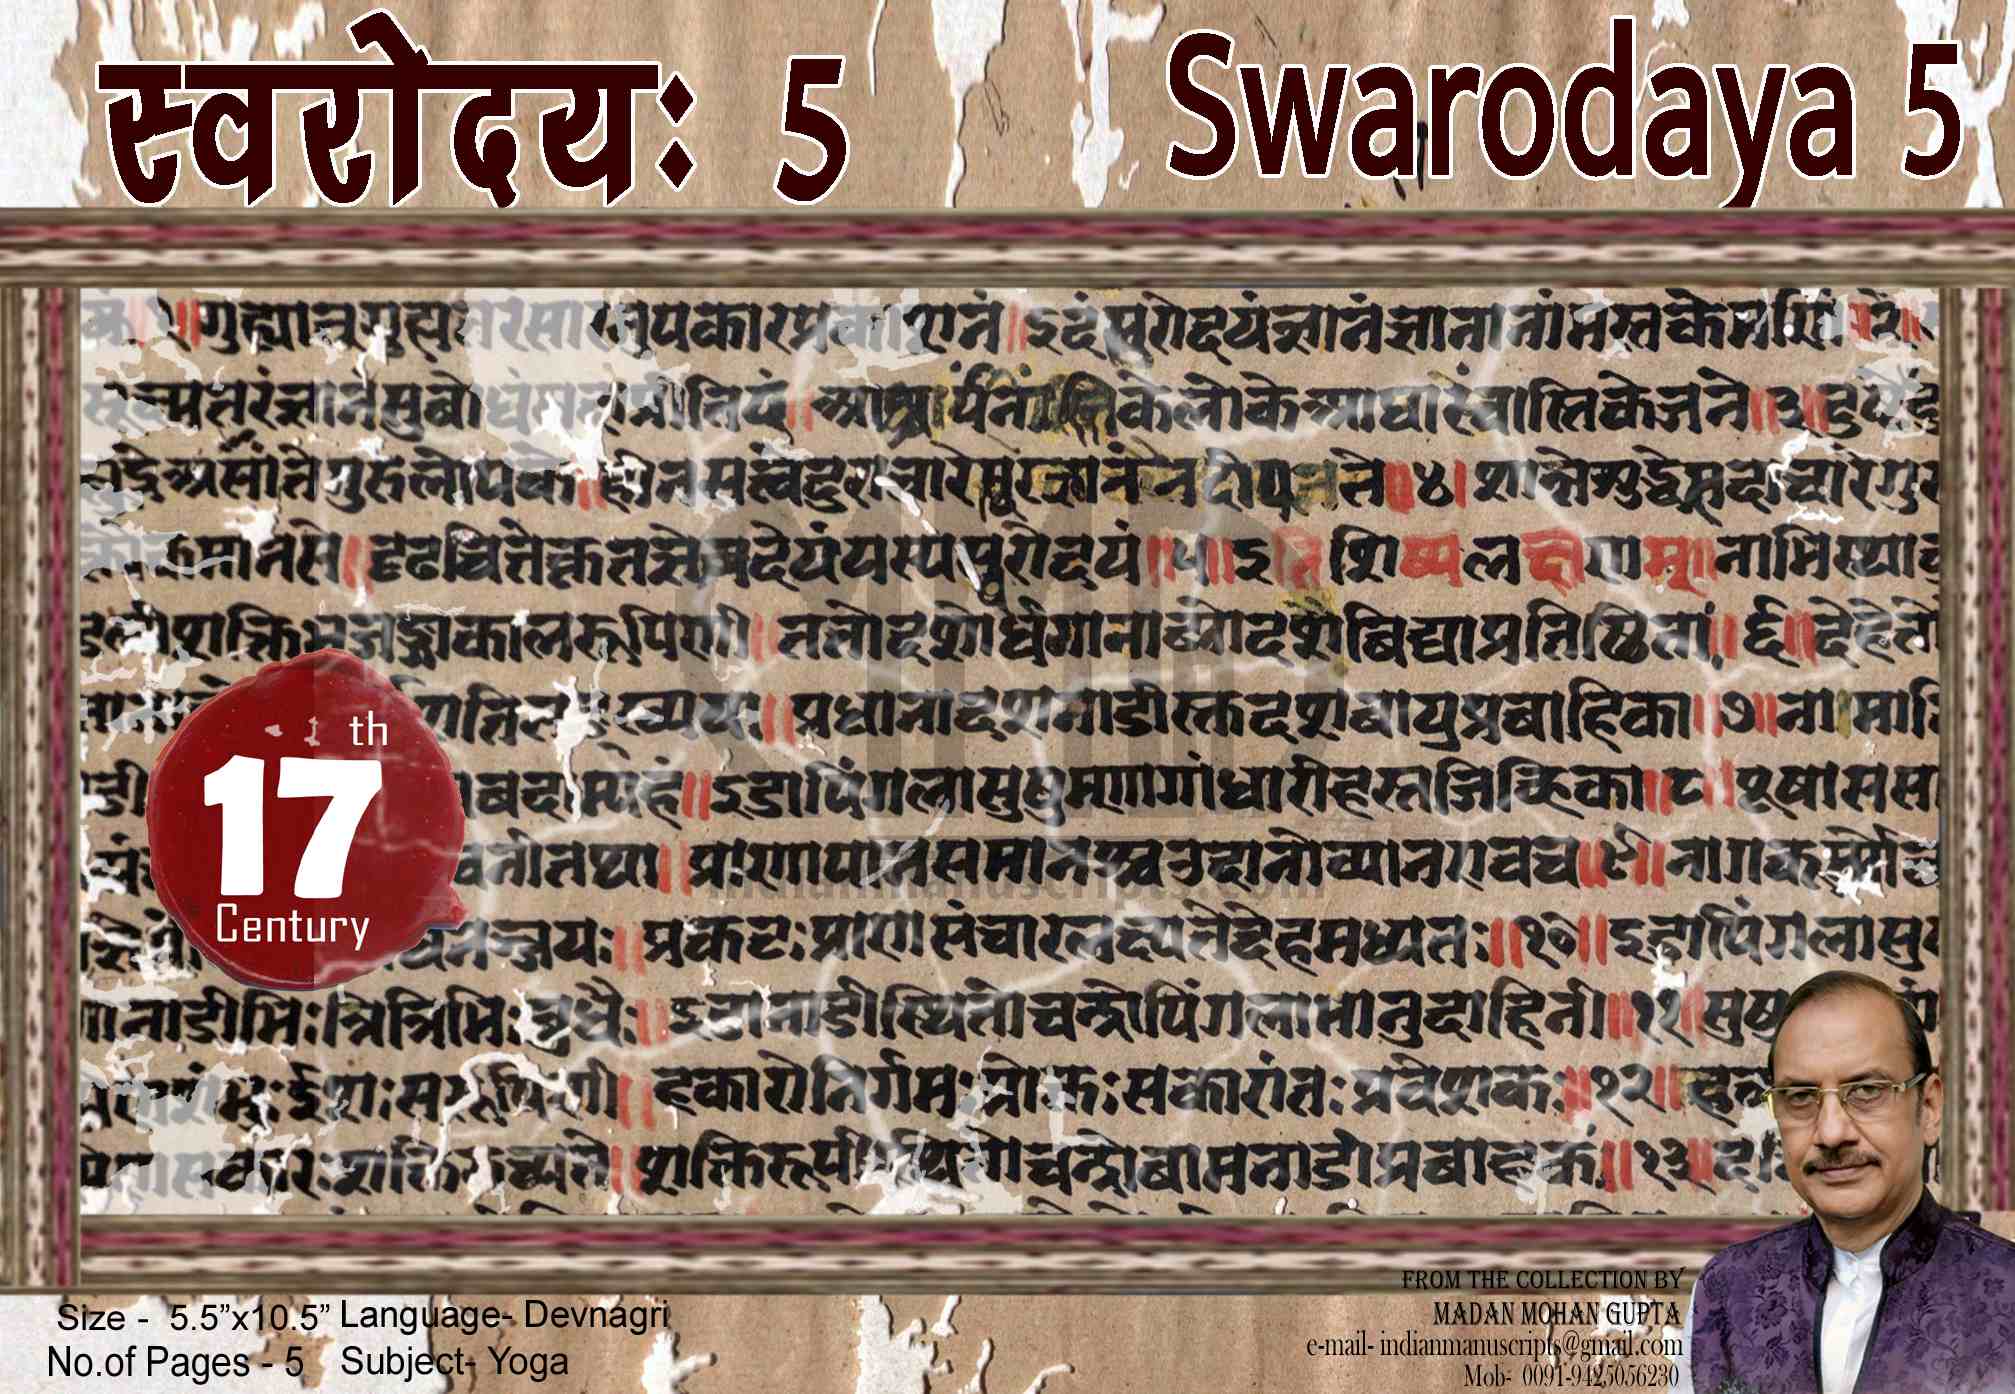 Swarodaya 5